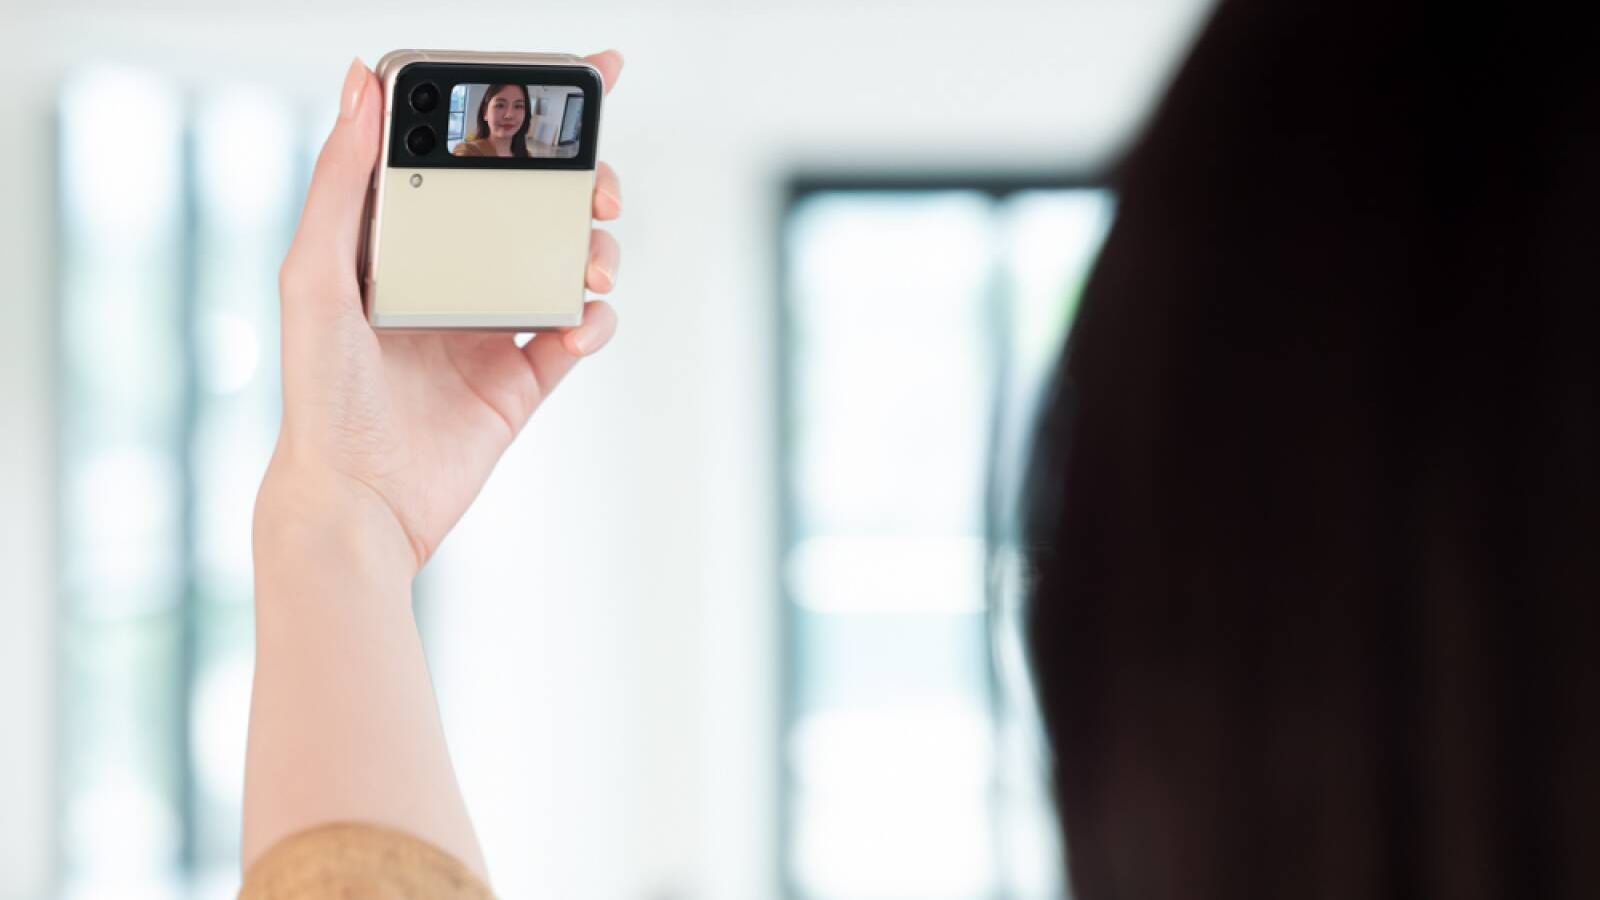 Al ser plegable el Samsung Galaxy Flip3 permite hacerse 'selfies' a la más alta resolución empleando la pantalla exterior como marco para las fotos. (Cortesía)